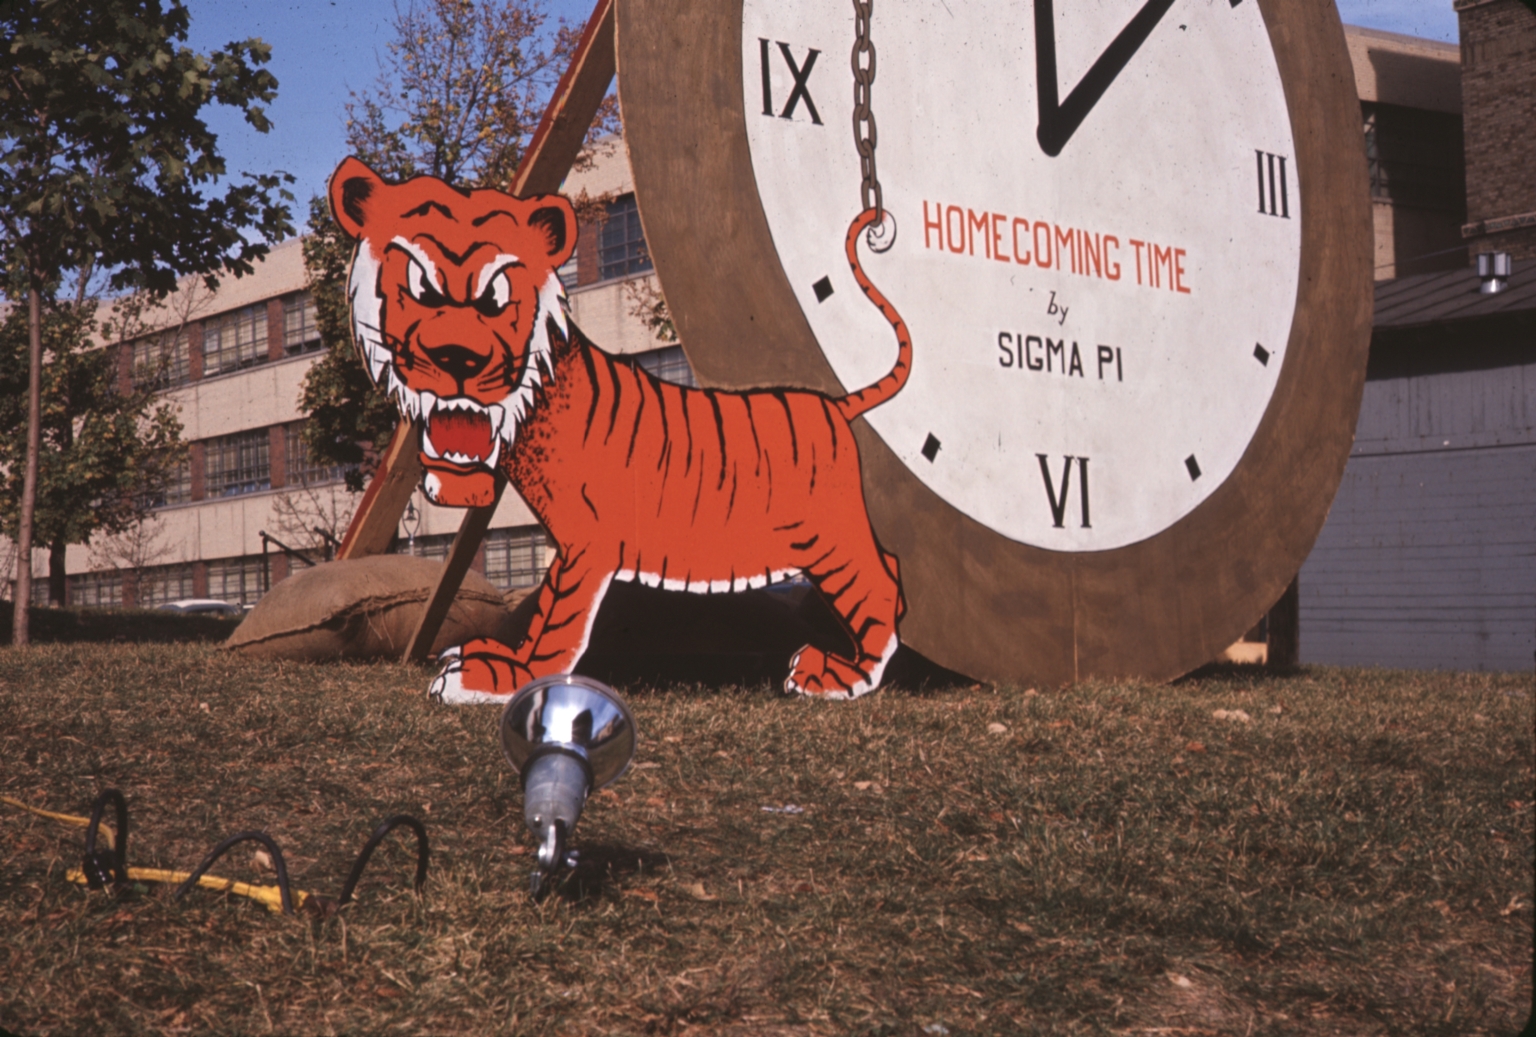 Sigma Pi's Homecoming Tiger